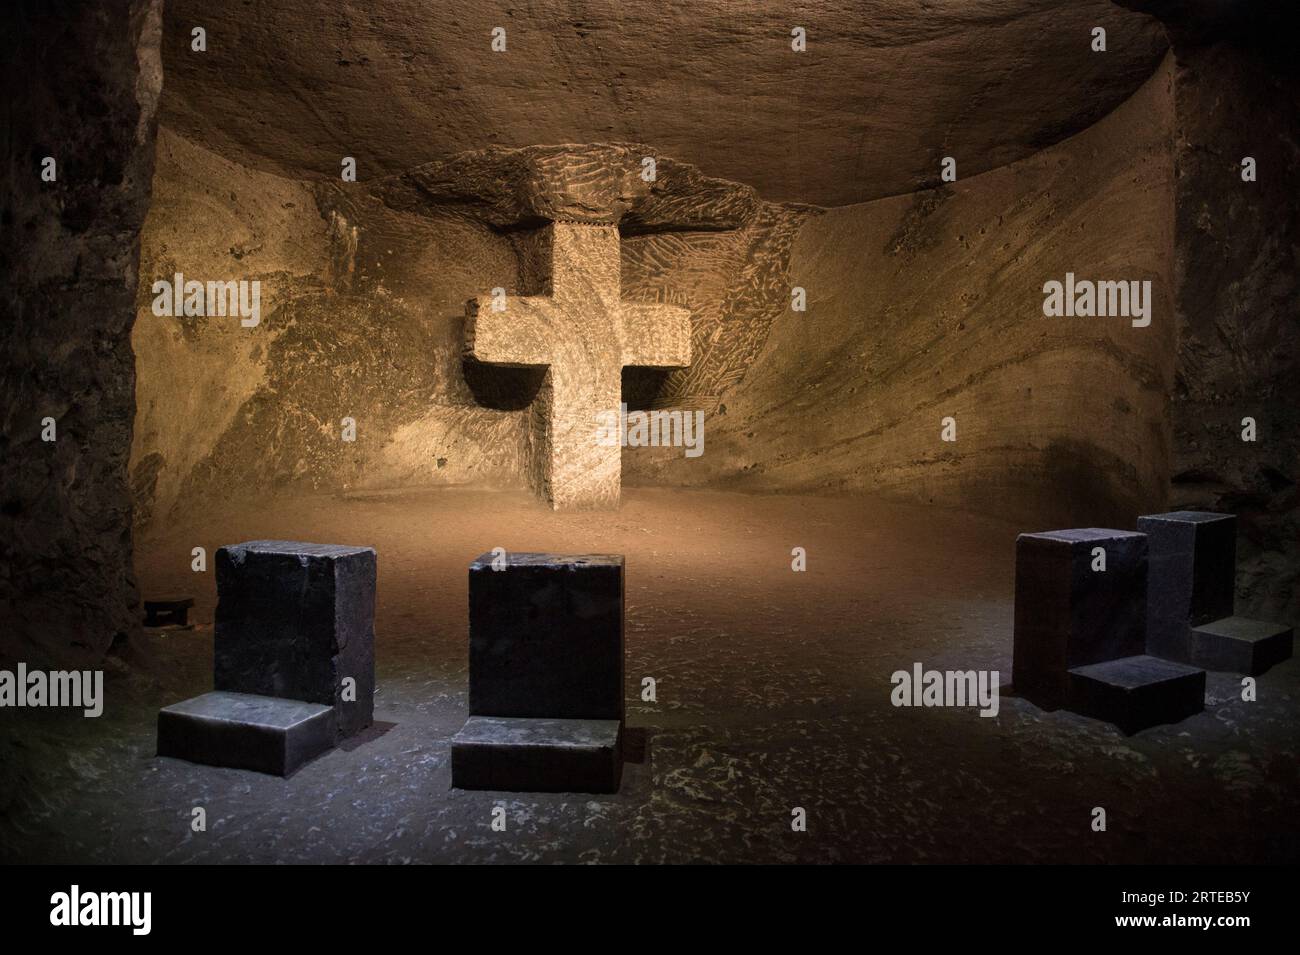 Cathédrale de sel de Zipaquira, église catholique romaine souterraine construite dans les tunnels d'une mine de sel ; Zipaquira, Cundinamarca, Colombie Banque D'Images